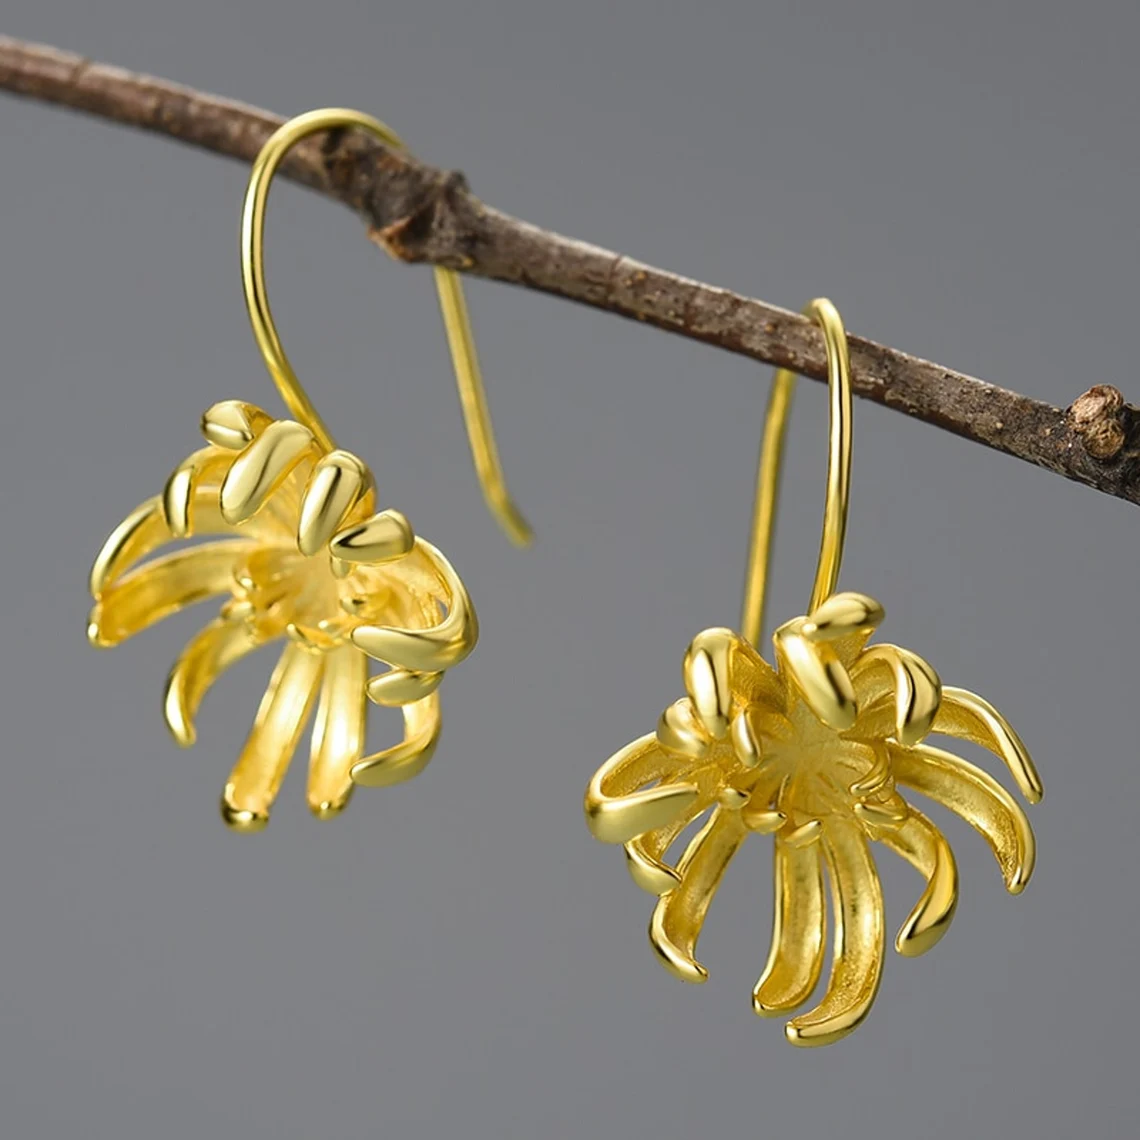 chrysanthemum earrings in gold